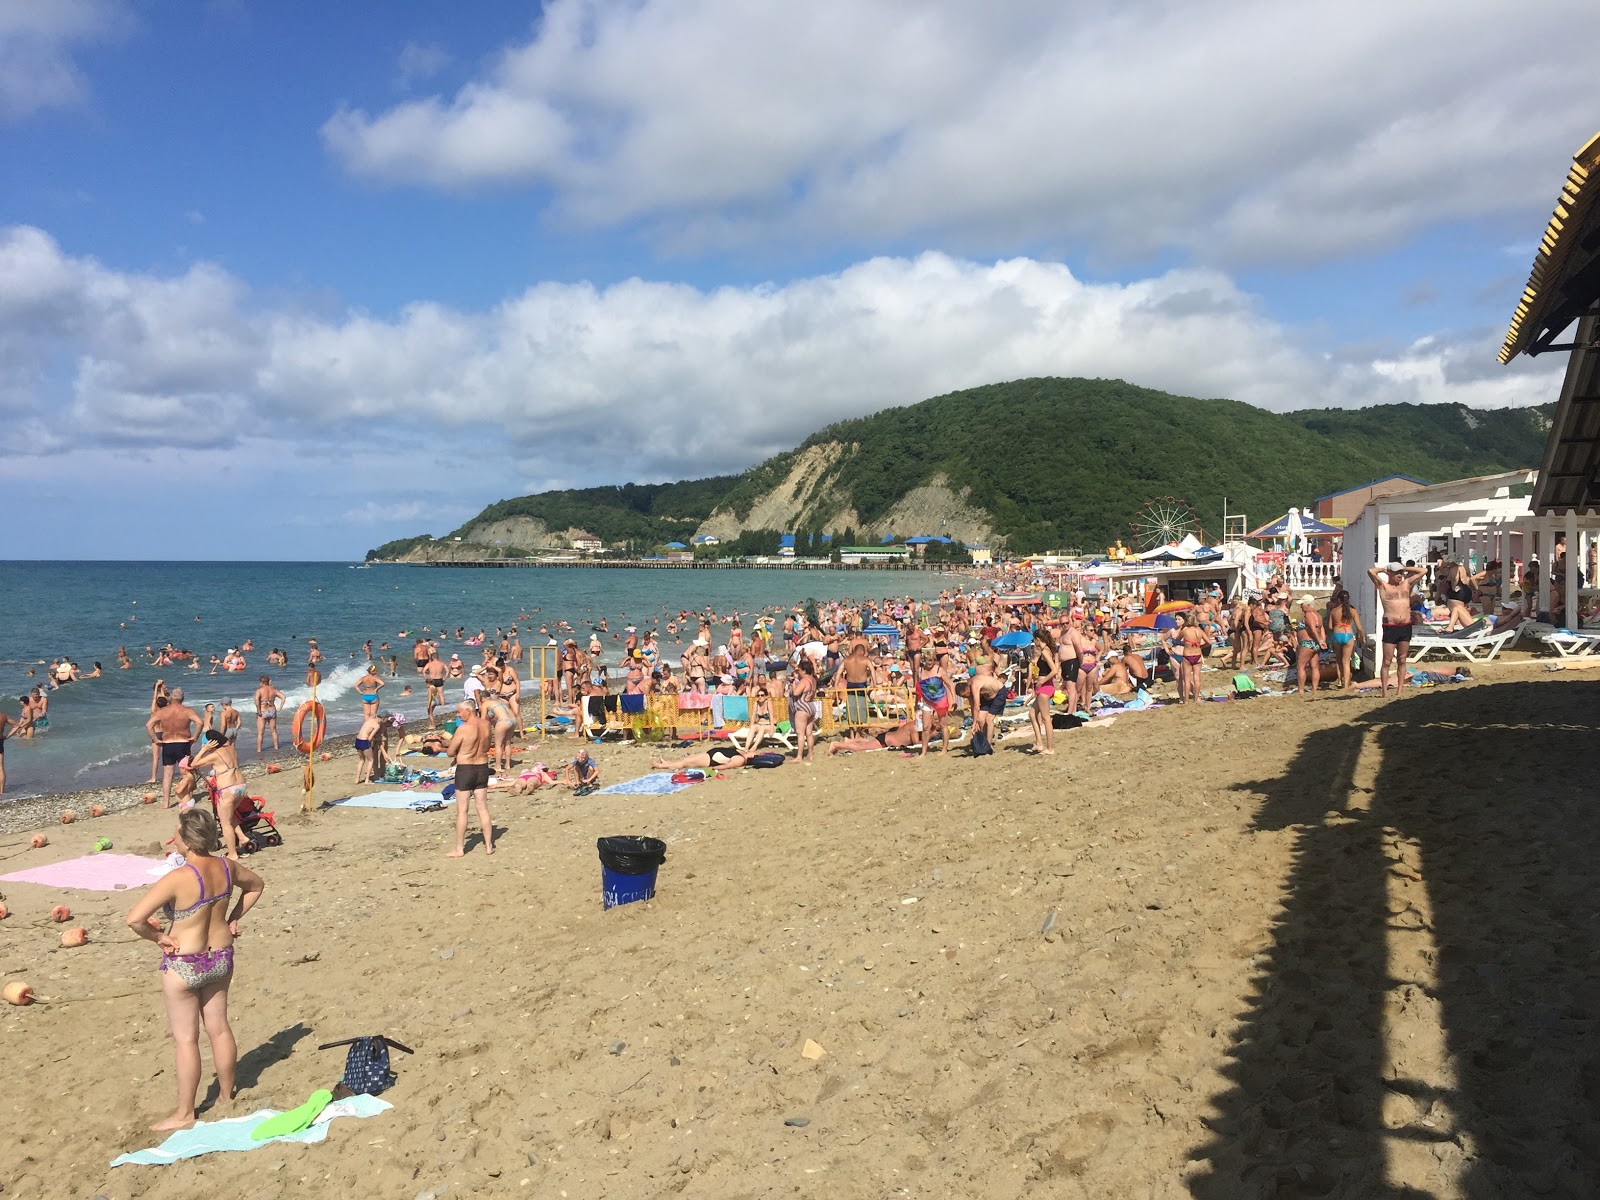 Foto de Lermontovo Village beach - recomendado para viajantes em família com crianças